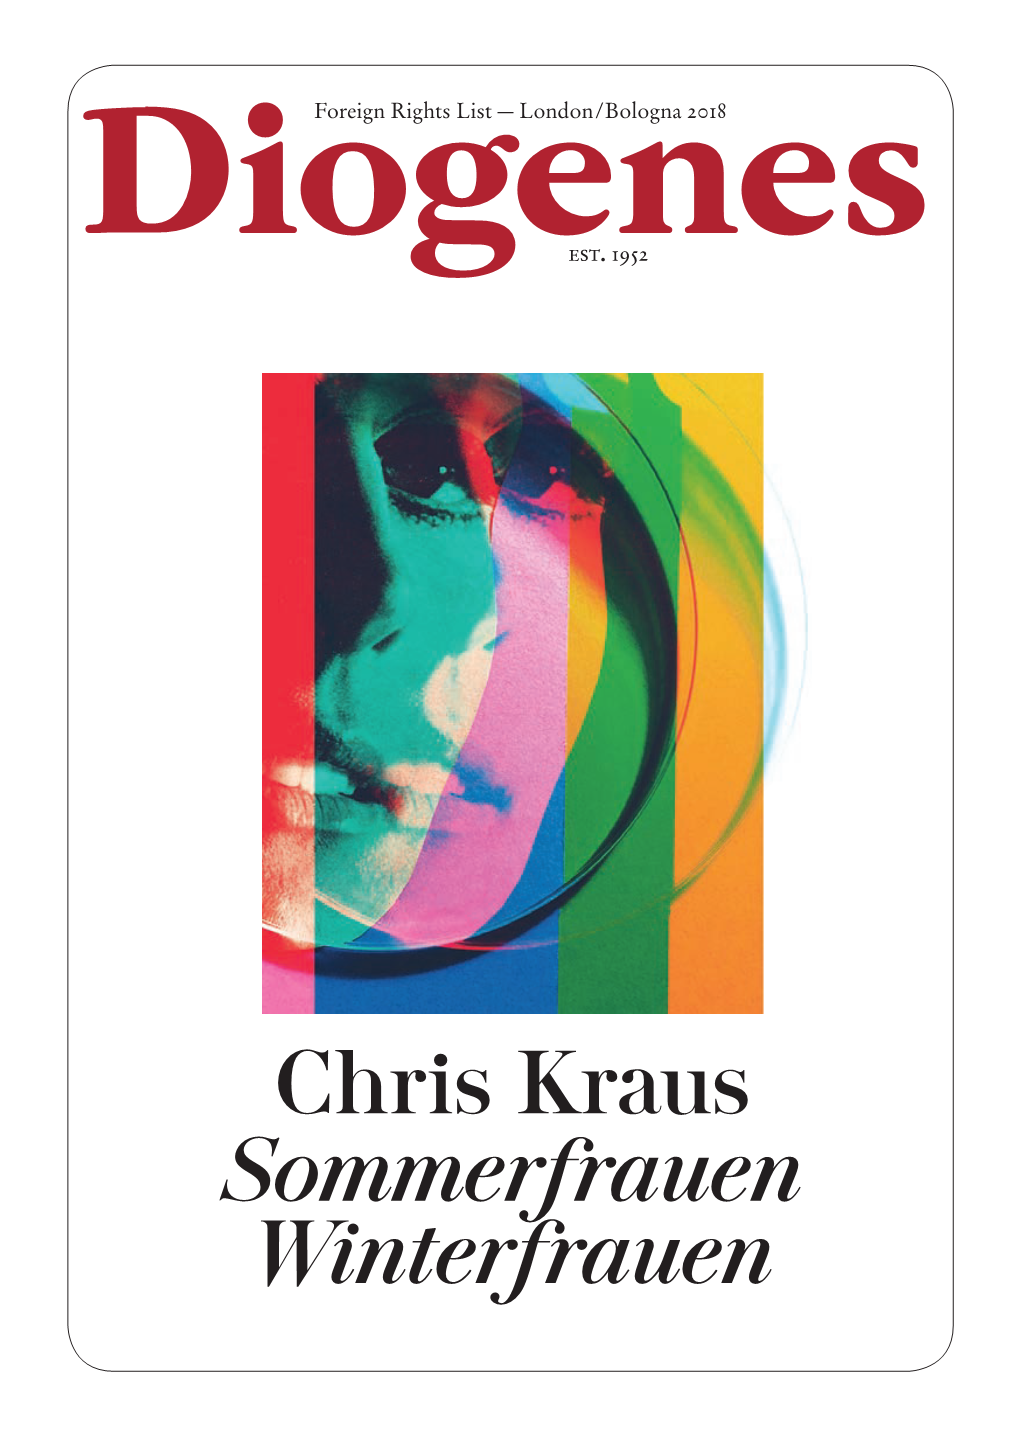 Chris Kraus Sommerfrauen Winterfrauen